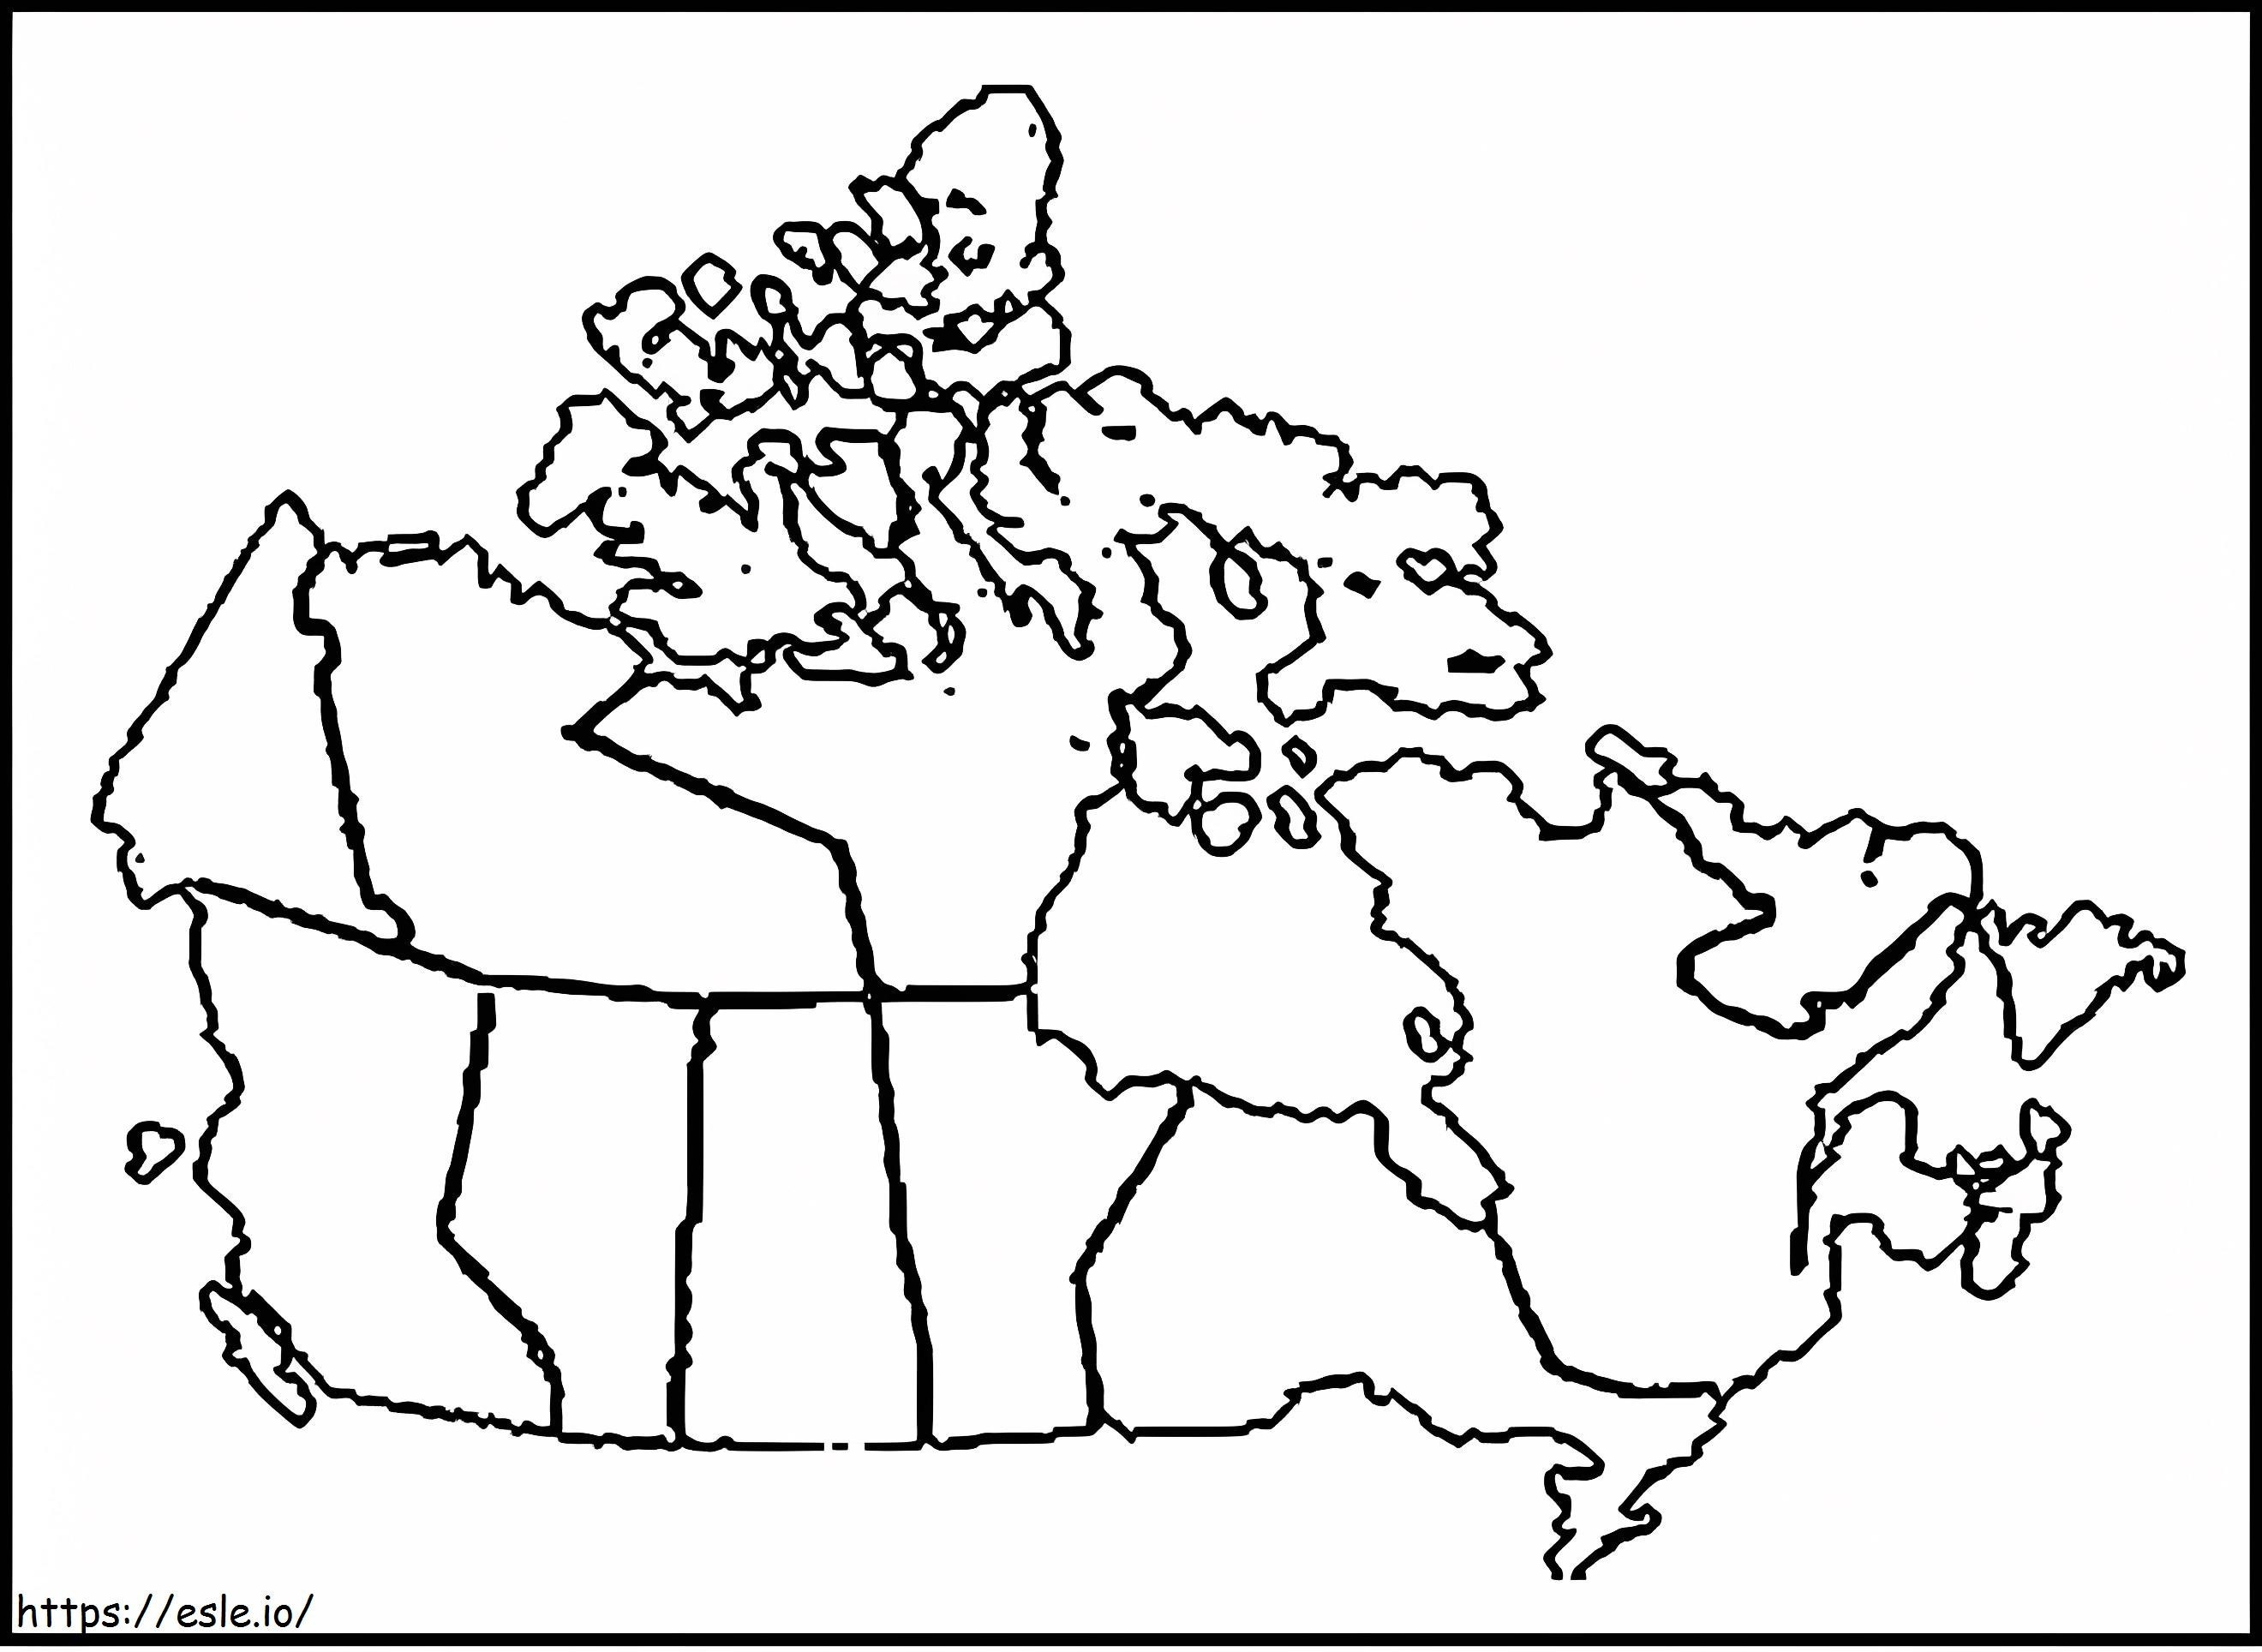 Karte von Kanada 5 ausmalbilder